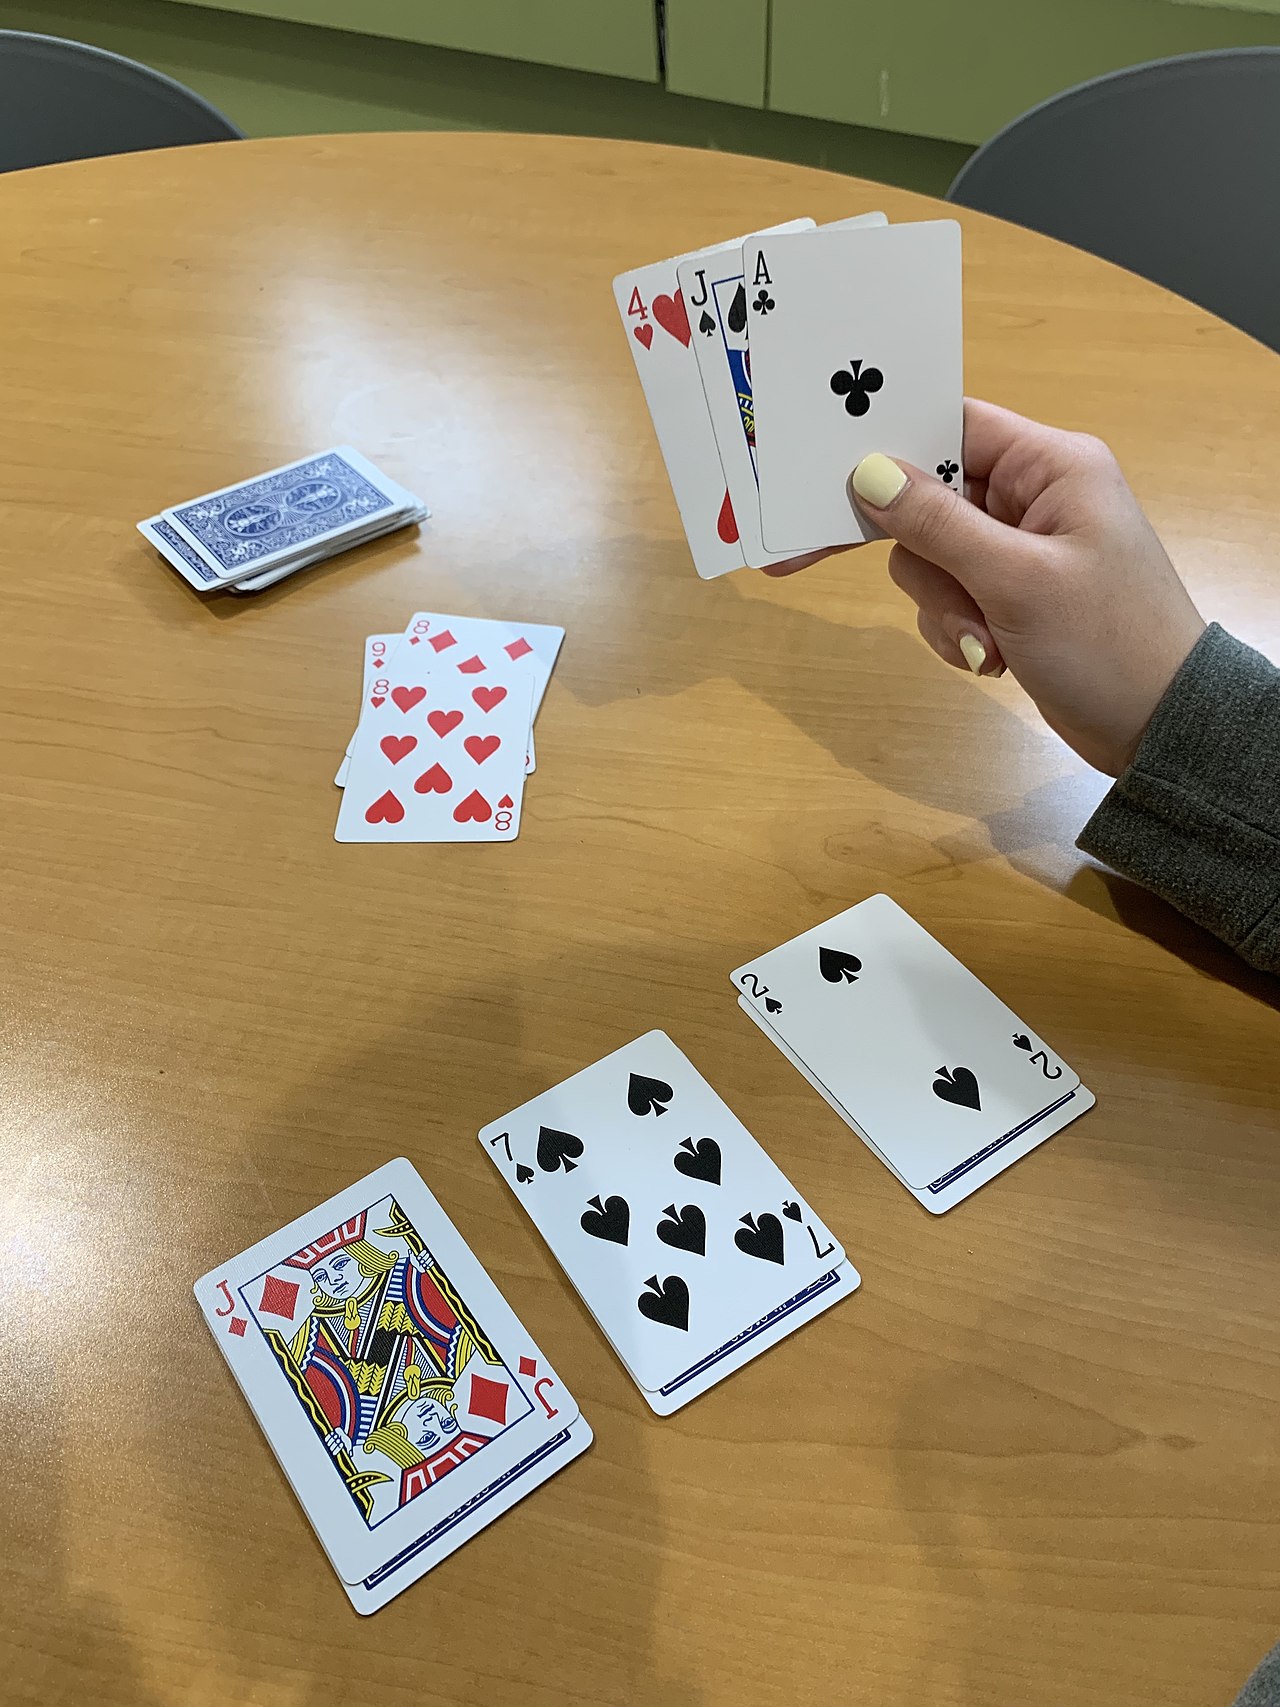 ما أصول لعبة الورق "لعبة الشدة" أو الكوتشينه ولماذا عددها 52 ورقة؟